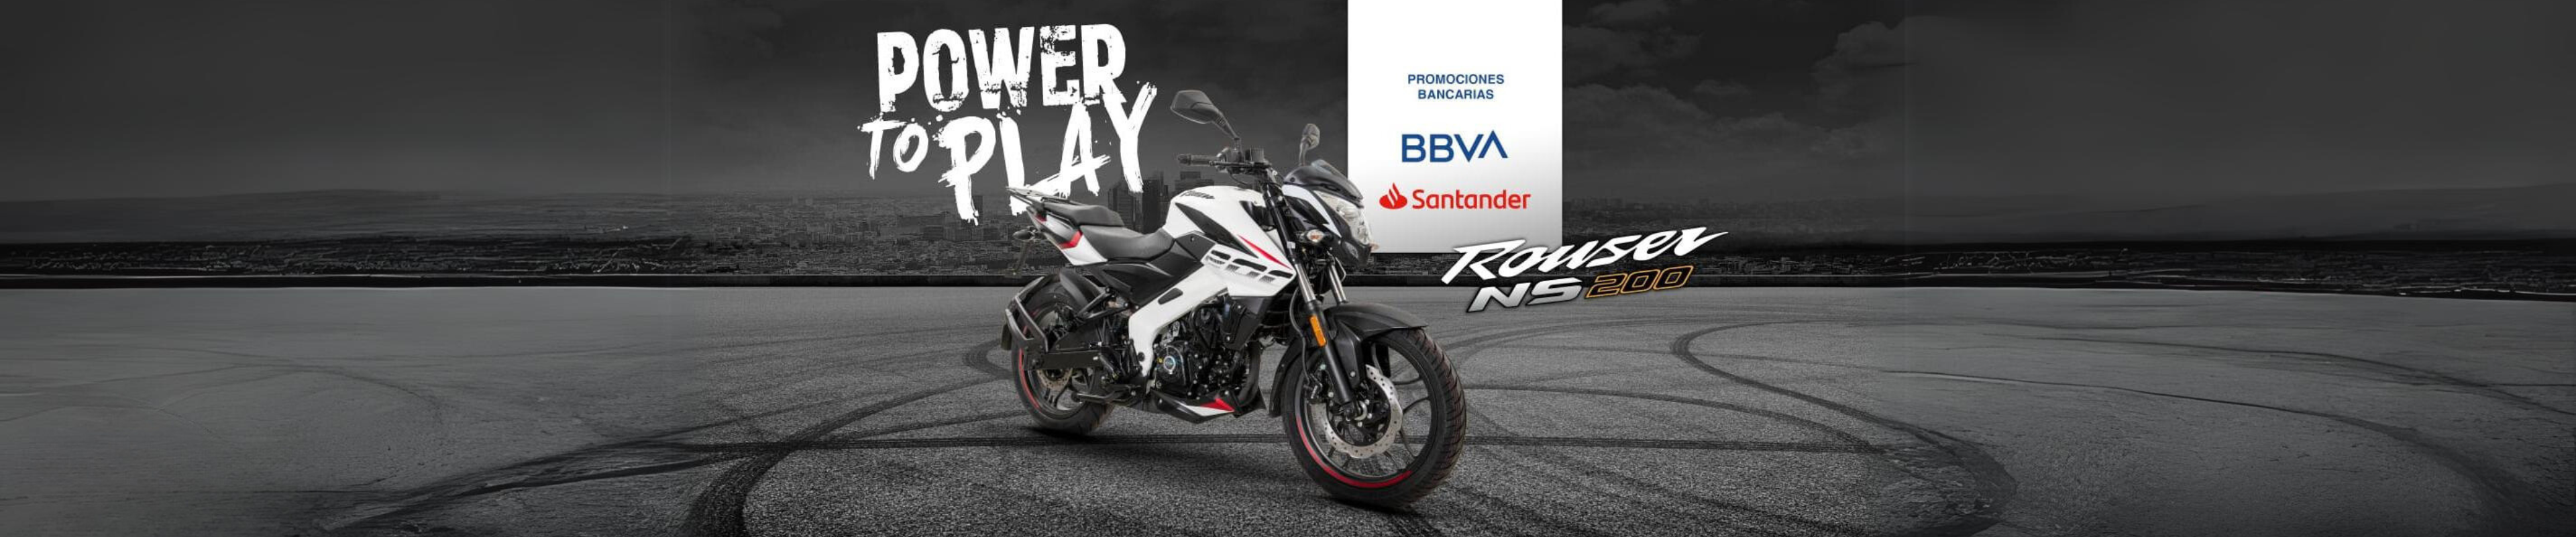 Bajaj Rouser NS 200 Promociones Bancarias con BBVA y Santander en Cycles